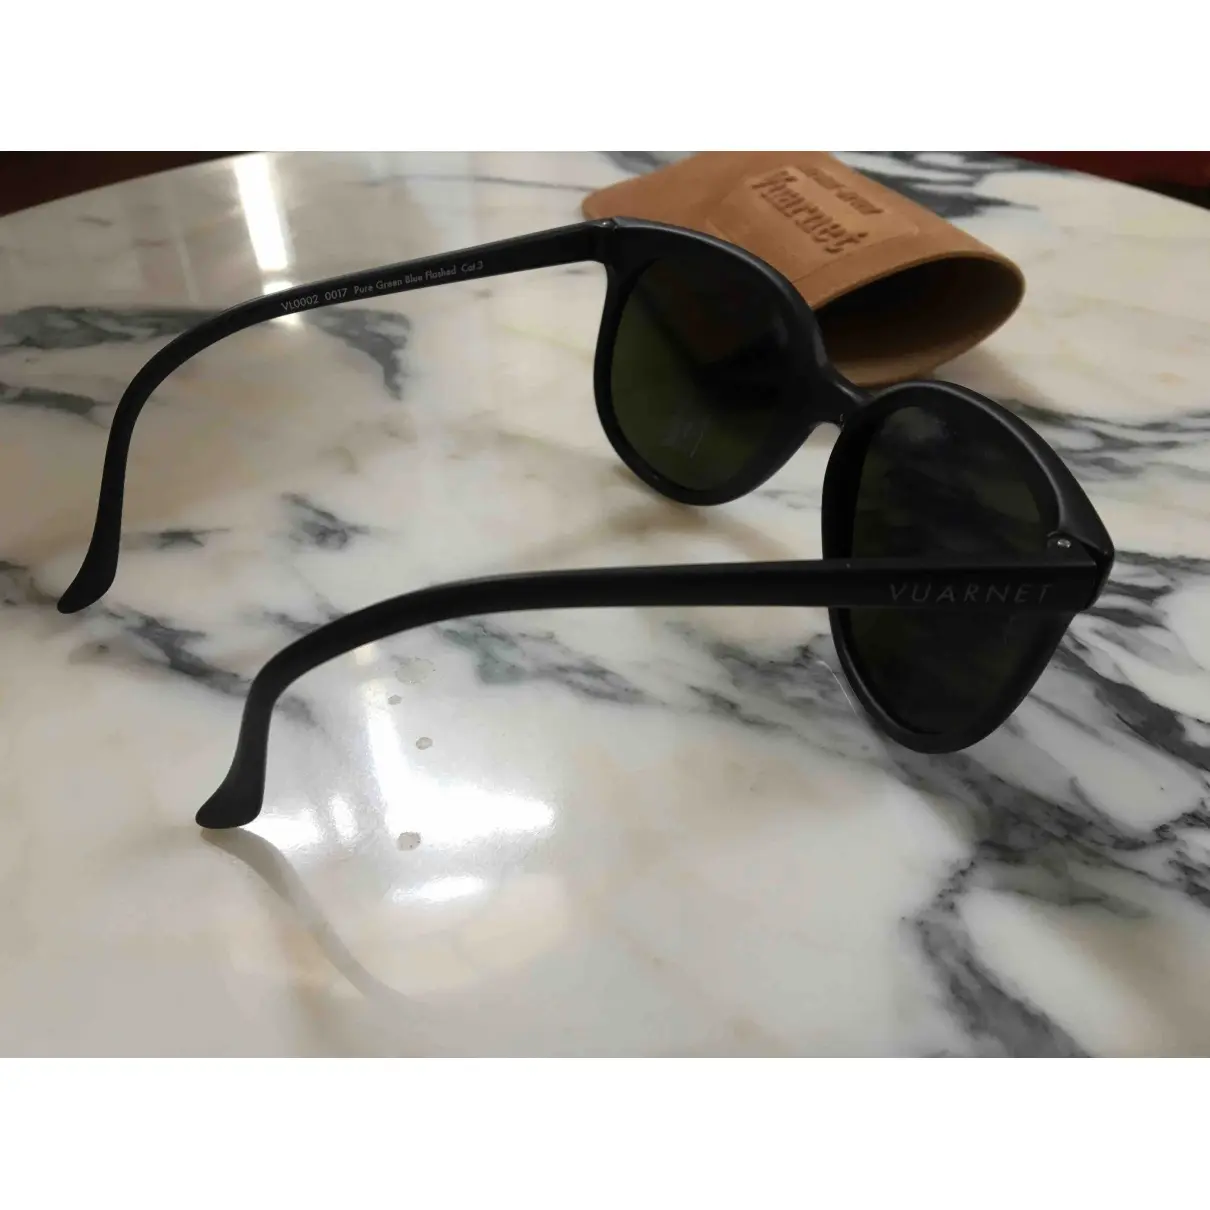 Buy Vuarnet Sunglasses online